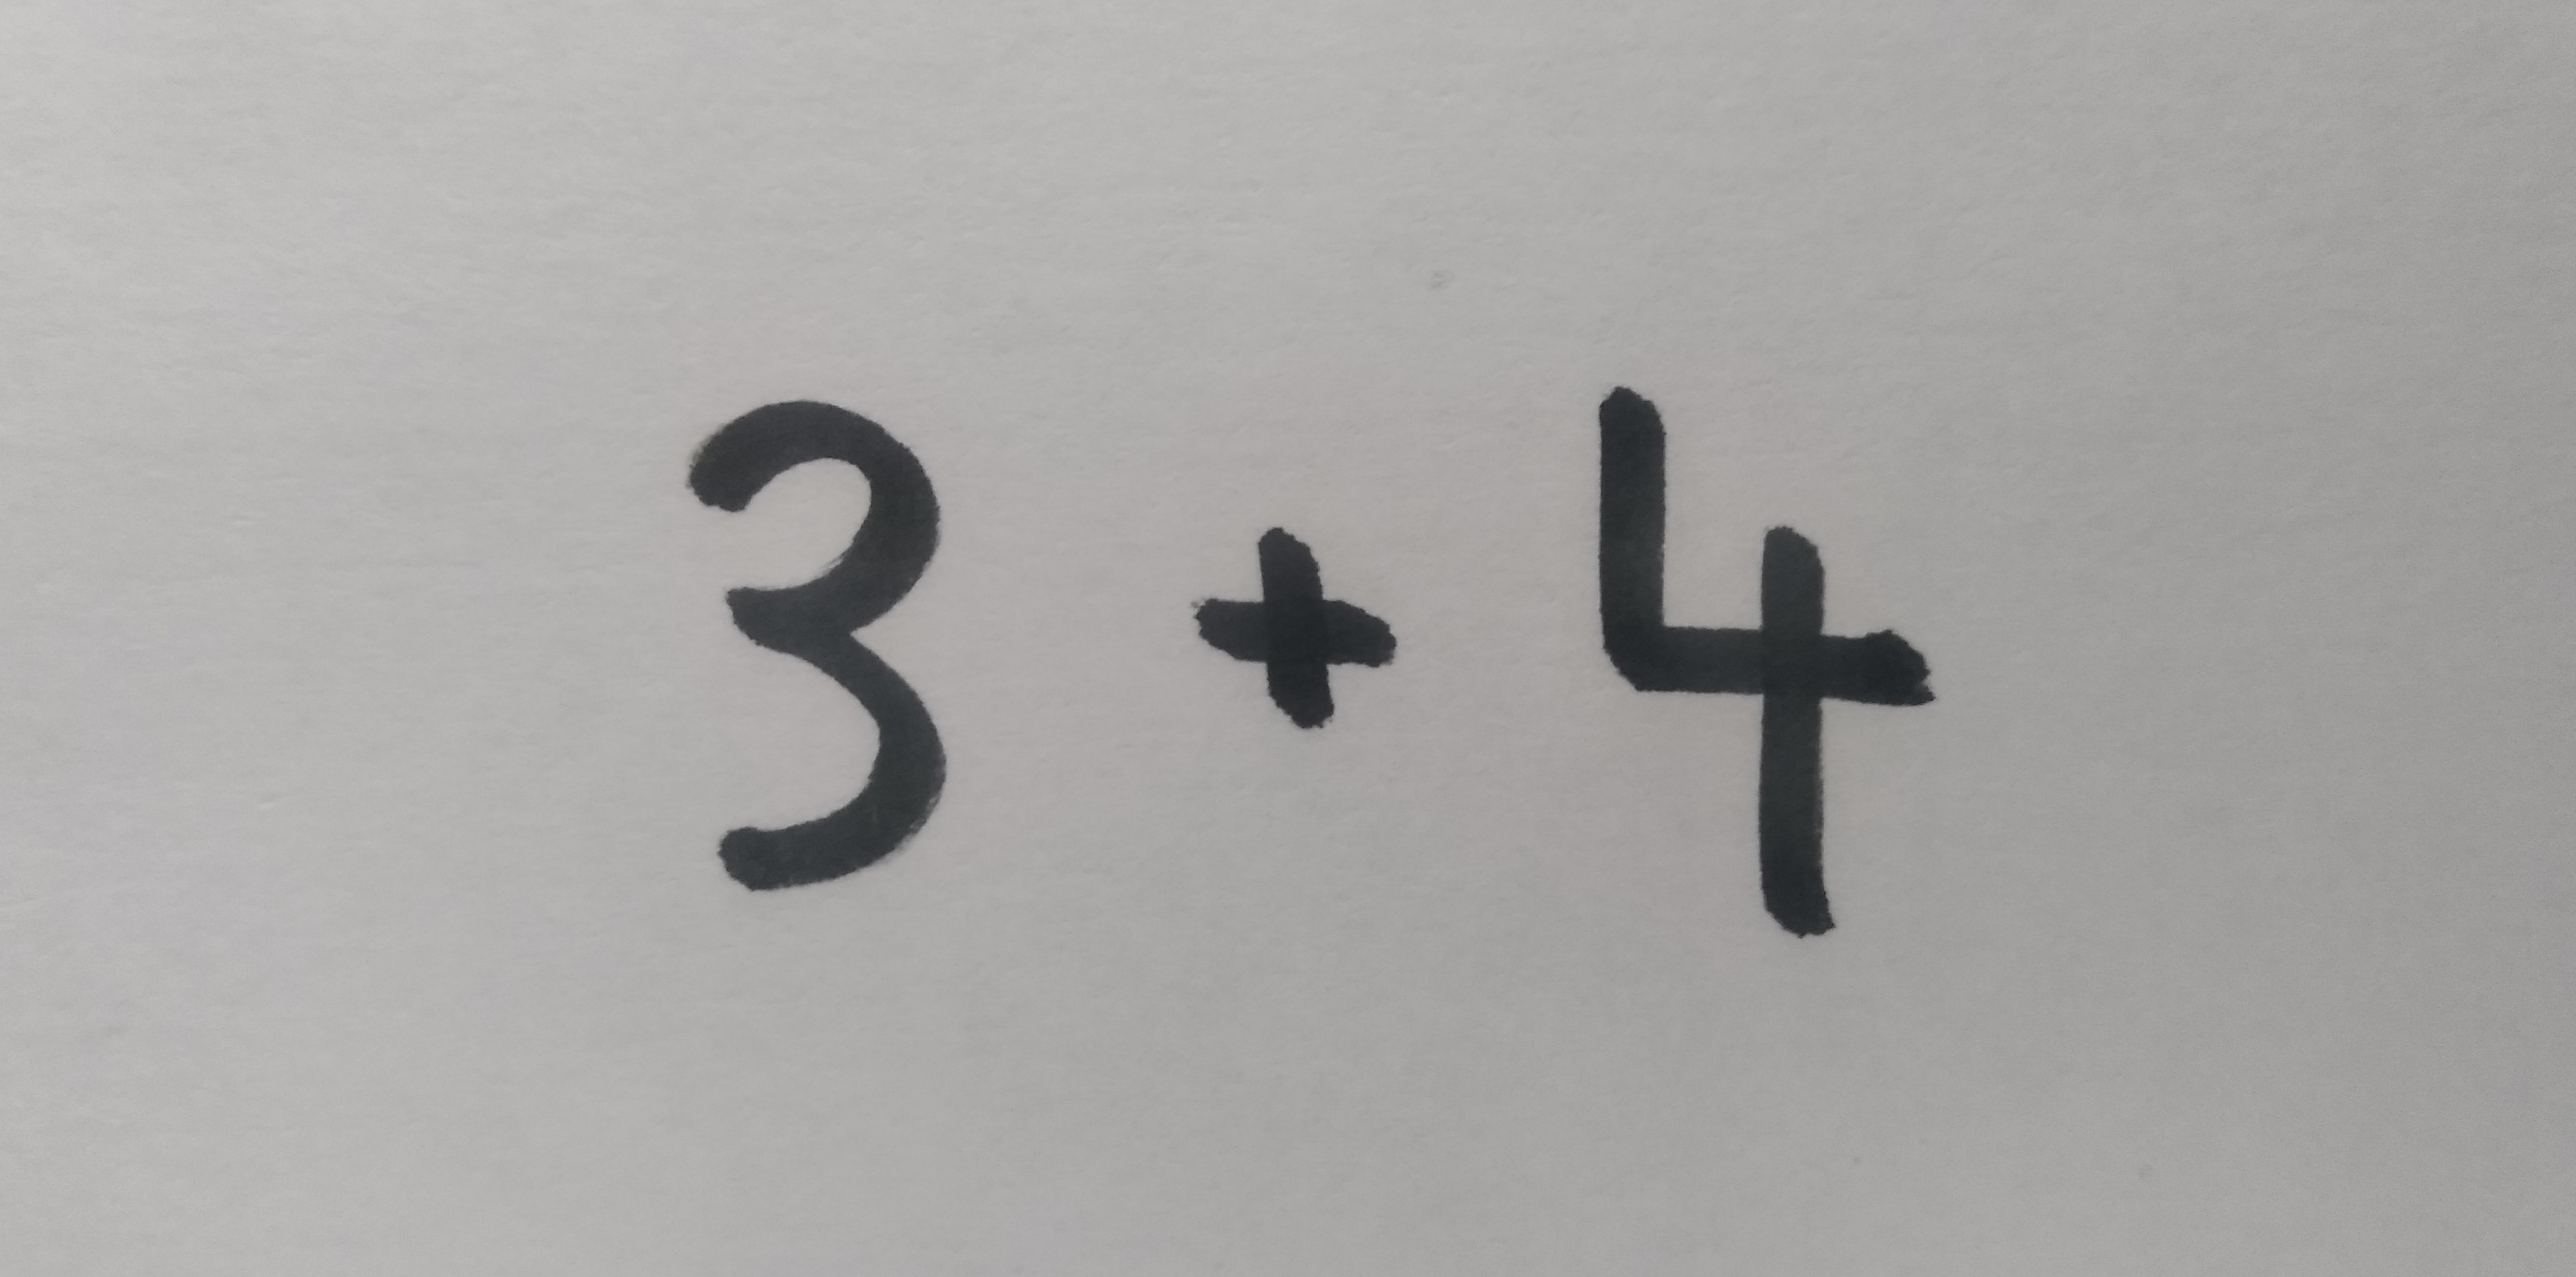 3 plus 4 je enako